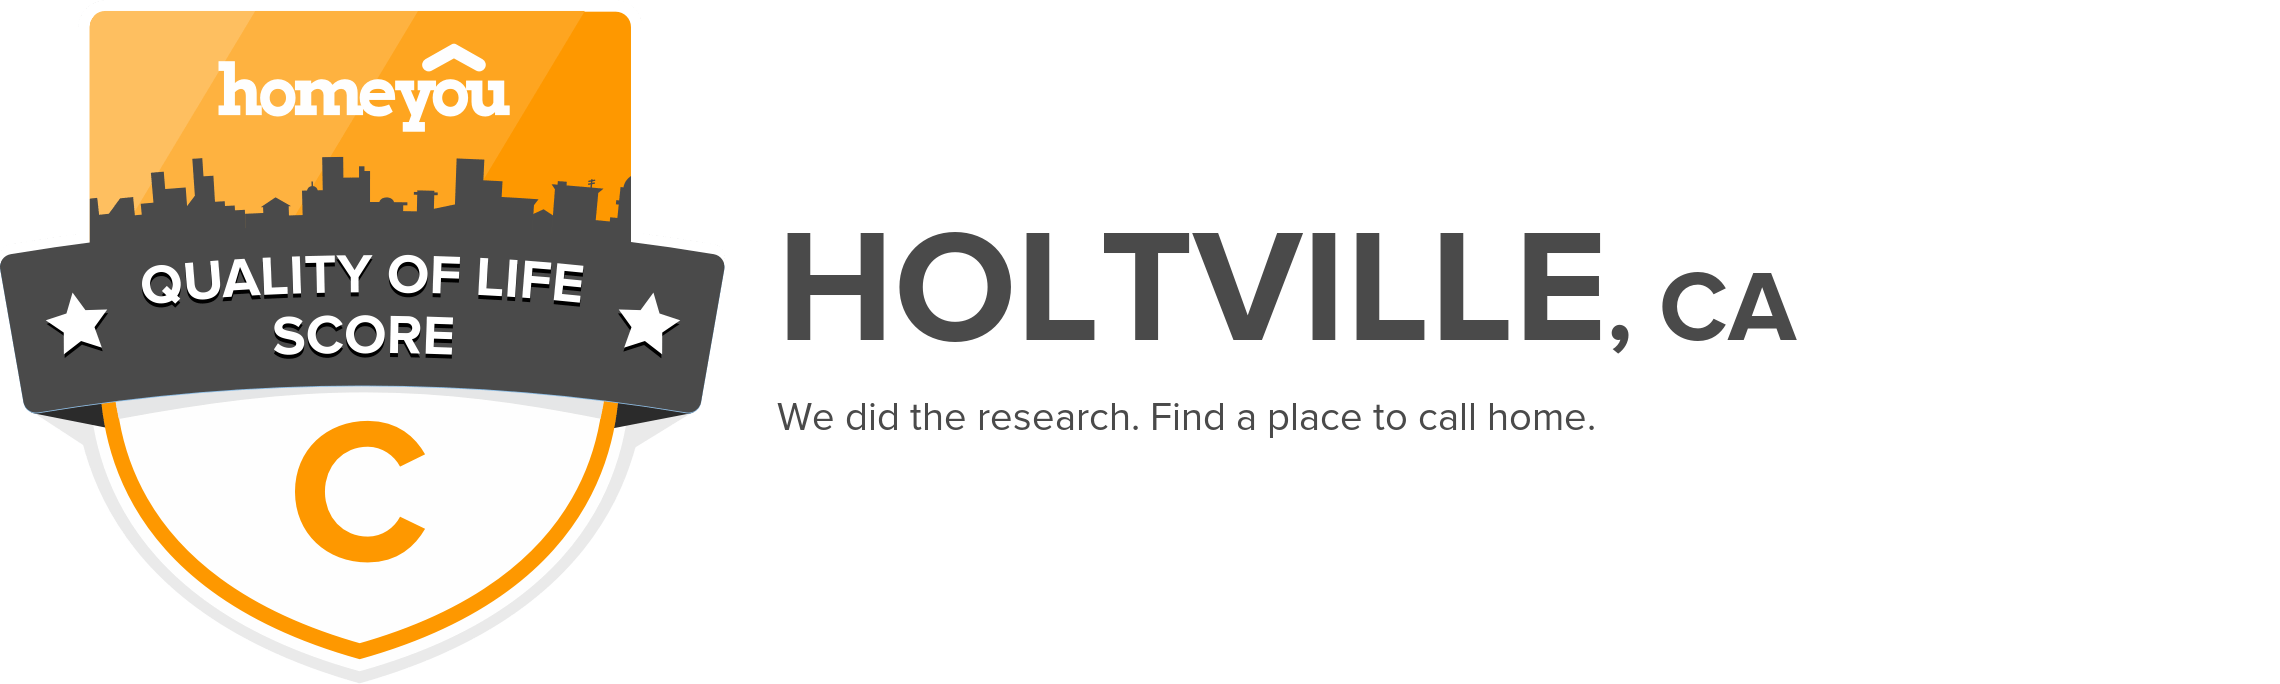 Holtville, CA